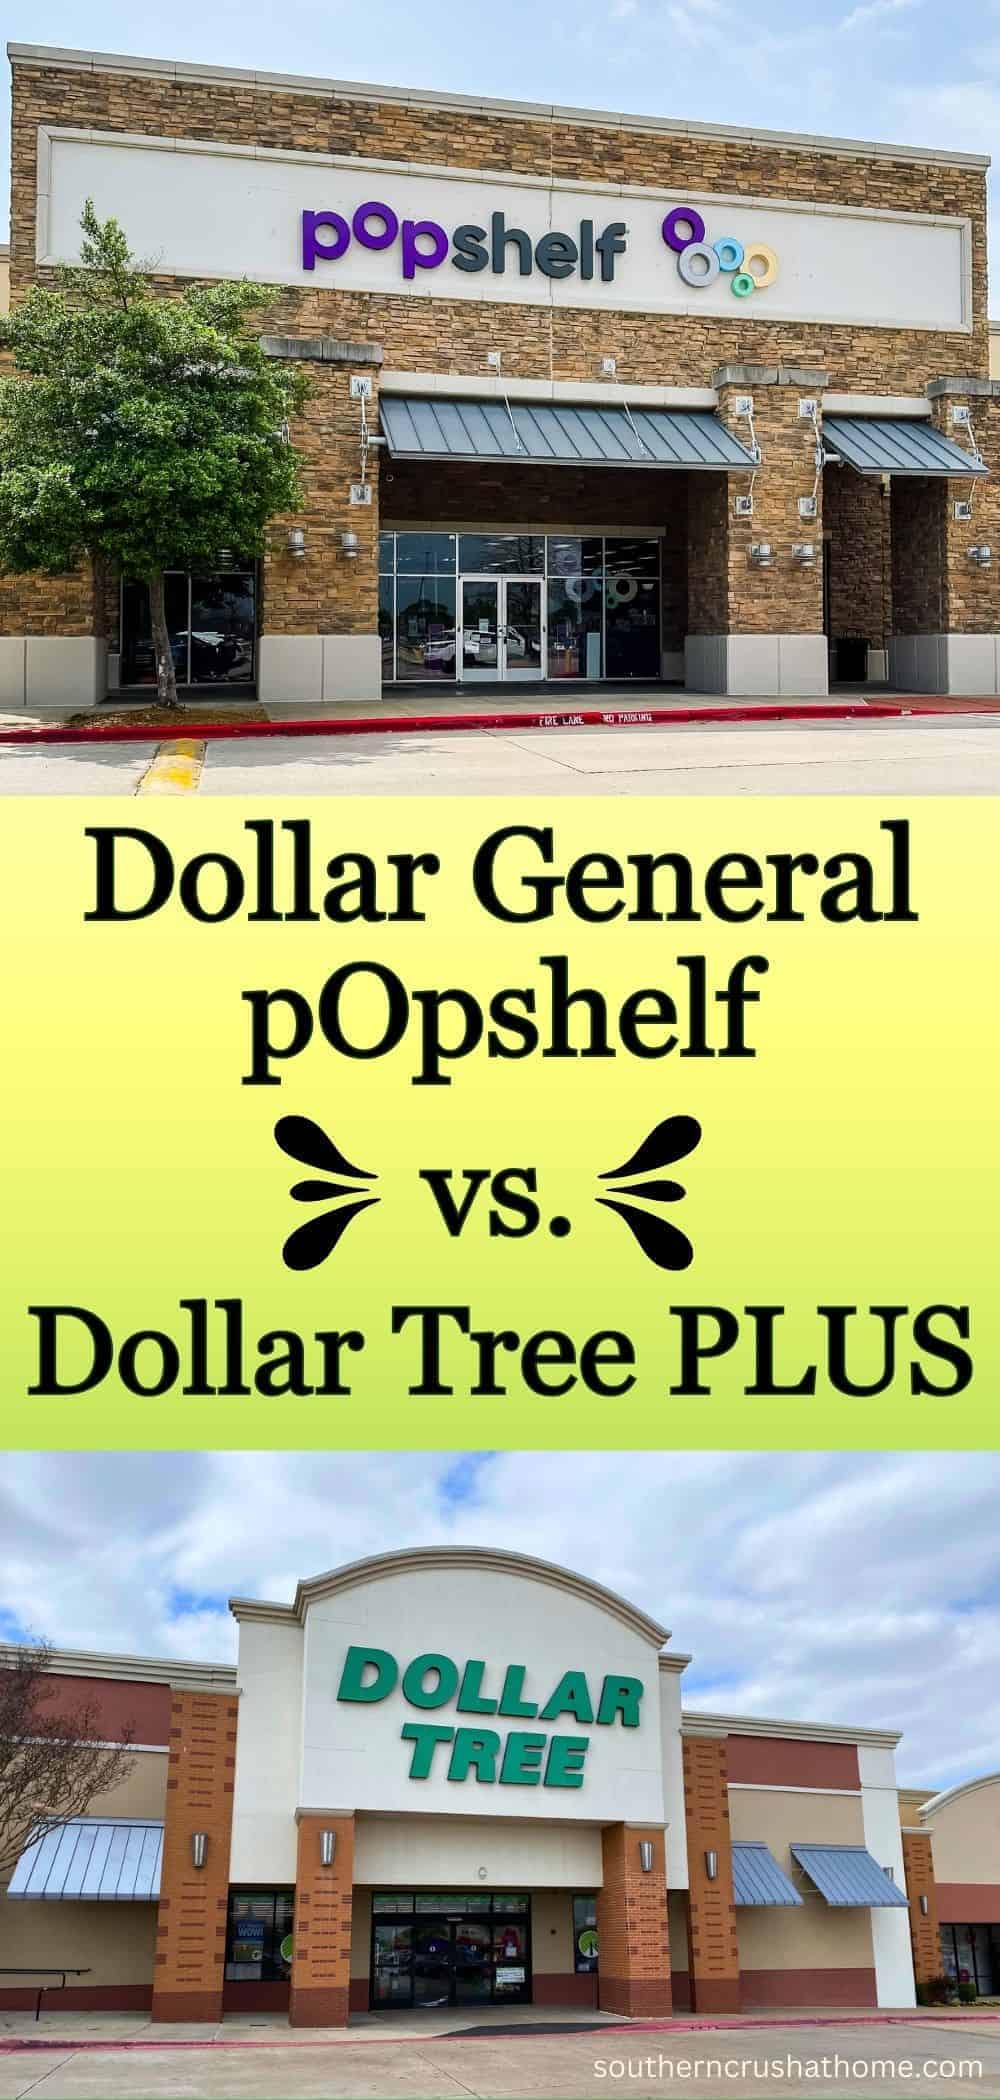 Popshelf vs DT Plus PIN